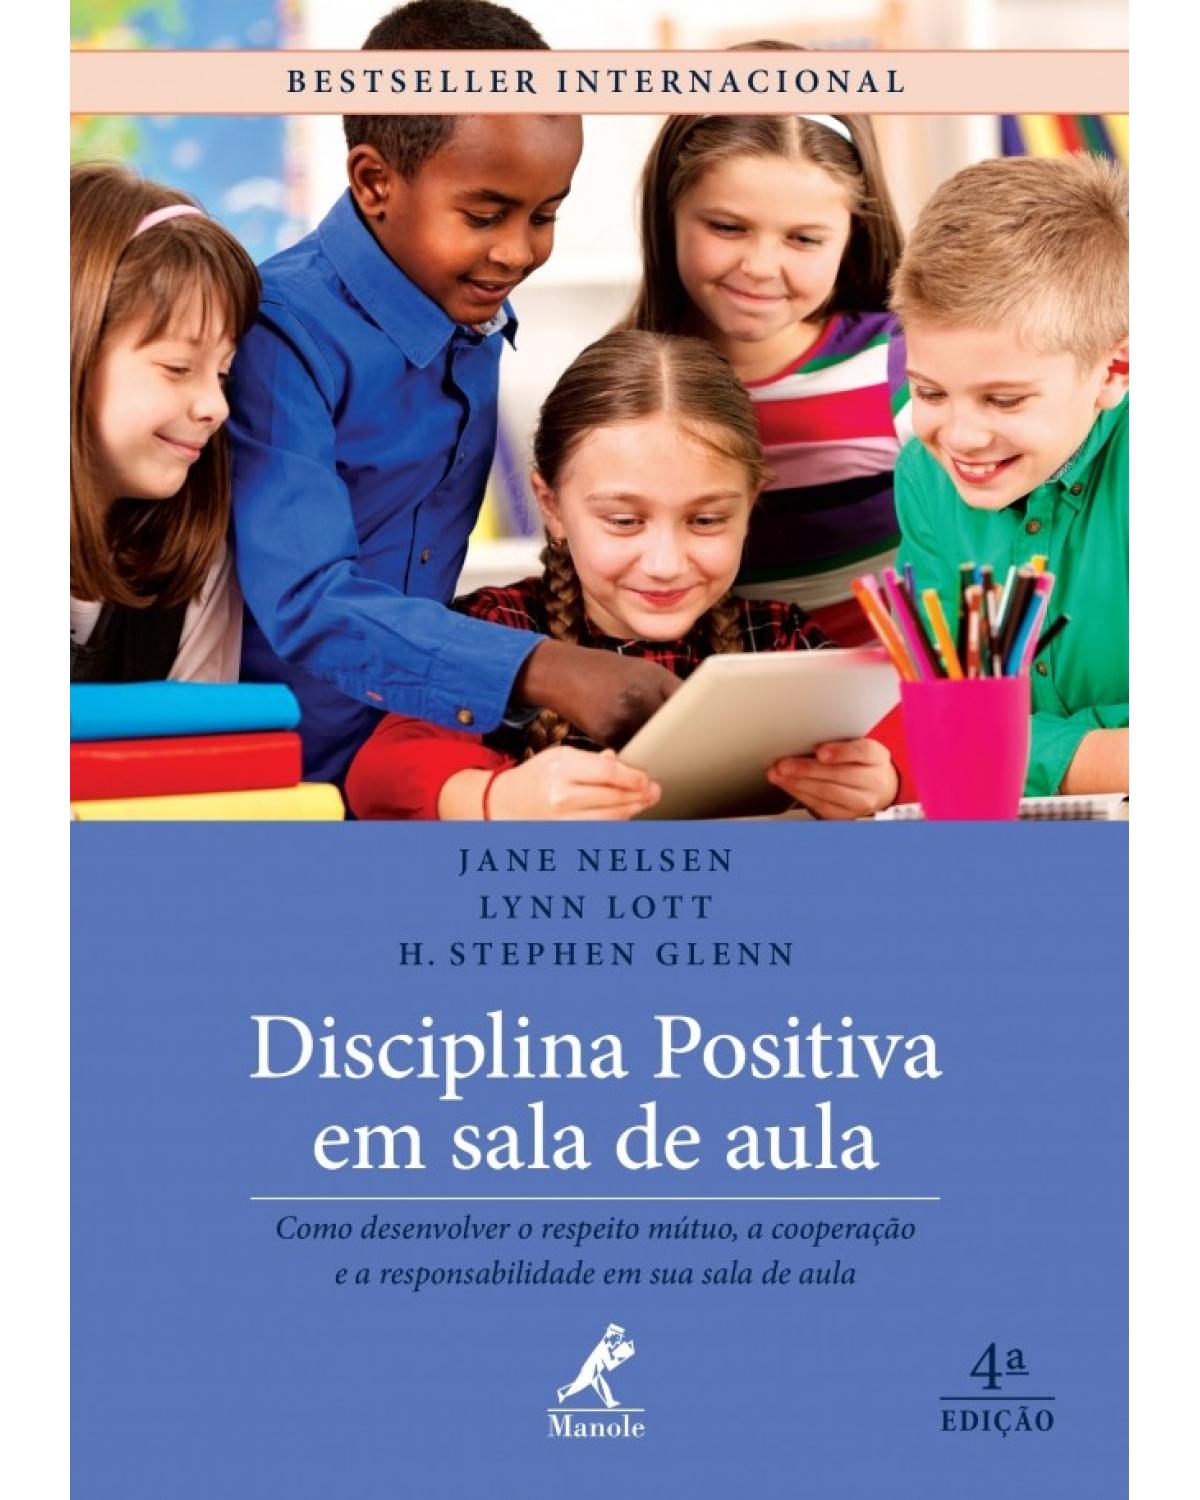 Disciplina positiva em sala de aula - Como desenvolver o respeito mútuo, a cooperação e a responsabilidade em sua sala de aula - 4ª Edição | 2017